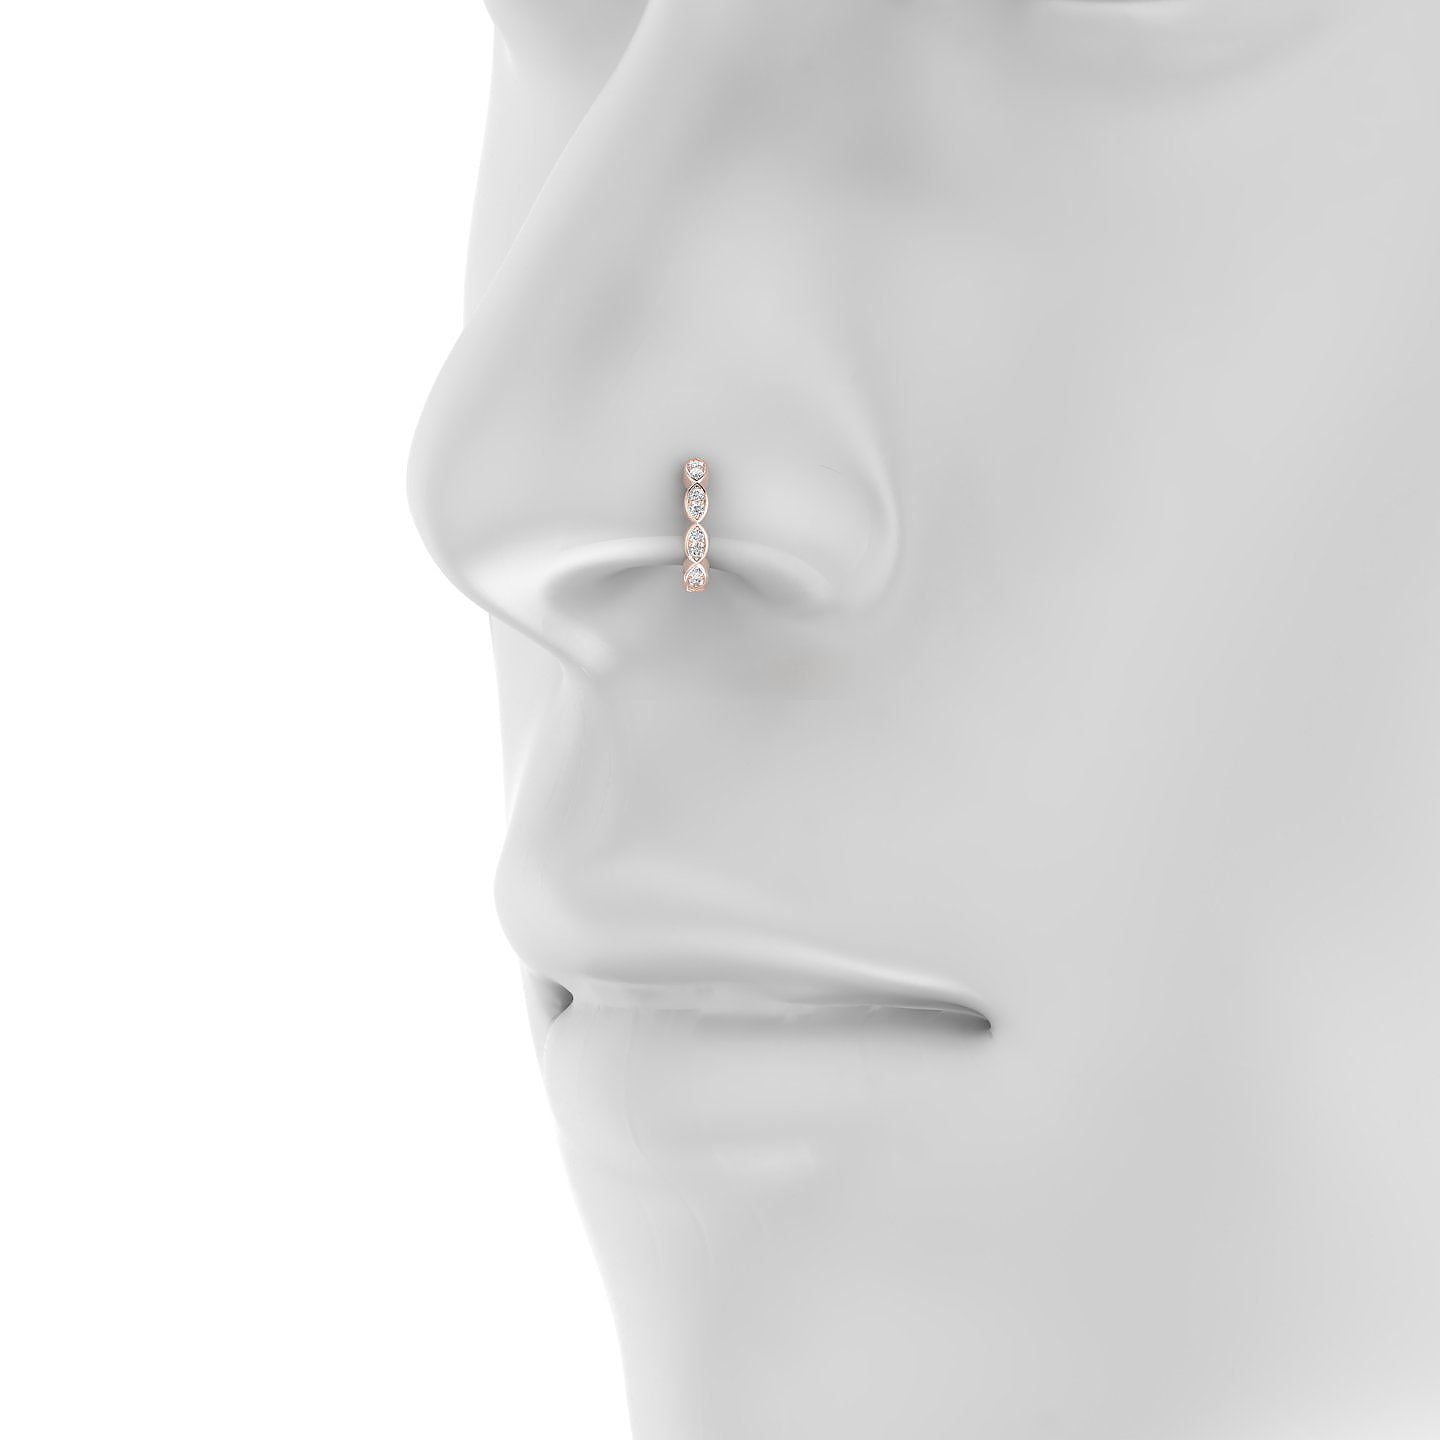 Hathor | 18k Rose Gold 8 mm Diamond Nose Ring Piercing